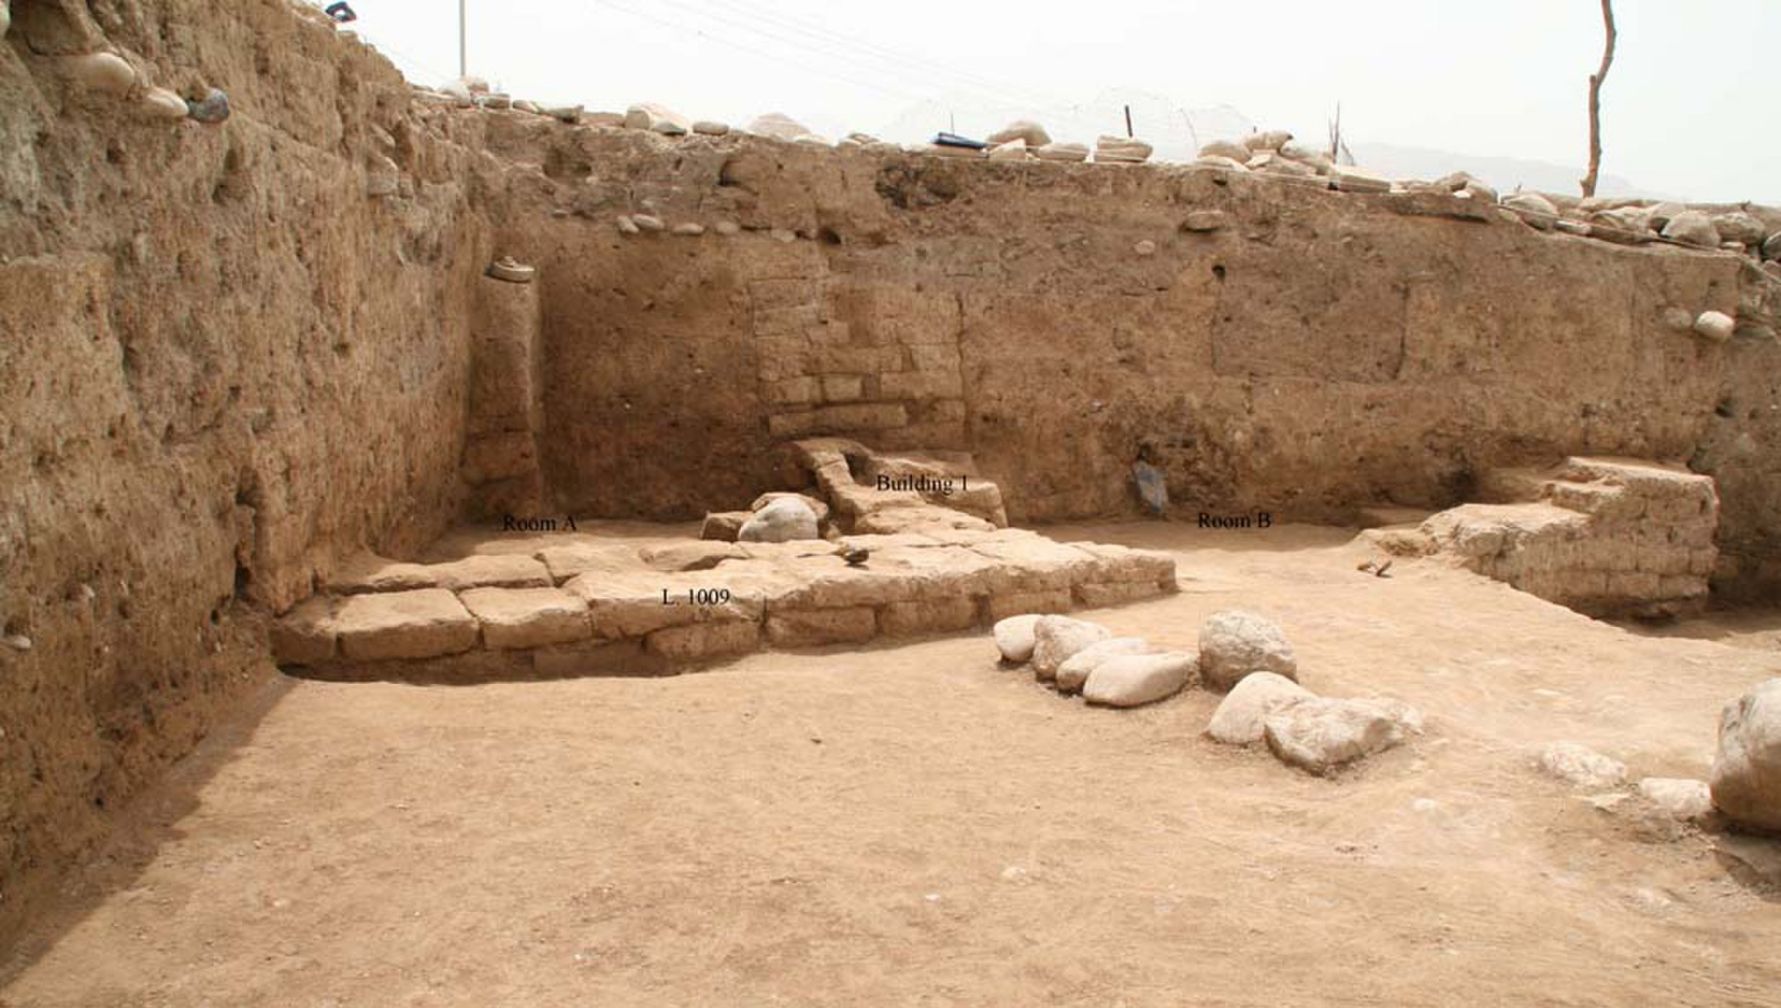 นักโบราณคดีในเขตเคอร์ดิสถานทางตอนเหนือของอิรักได้ค้นพบเมืองโบราณที่เรียกว่า "อีดู" พื้นที่ดังกล่าวเคยถูกยึดครองตั้งแต่สมัยยุคหินใหม่ เมื่อเกษตรกรรมปรากฏขึ้นครั้งแรกในตะวันออกกลาง และเมืองนี้ถึงขนาดสูงสุดเมื่อ 3,300 ถึง 2,900 ปีก่อน อาคารที่แสดงในที่นี้เป็นโครงสร้างภายในประเทศ โดยมีห้องอย่างน้อยสองห้อง ซึ่งอาจมีอายุถึงช่วงปลายชีวิตของผู้คนในเมือง ประมาณ 2,000 ปีก่อนเมื่อจักรวรรดิพาร์เธียนควบคุมพื้นที่